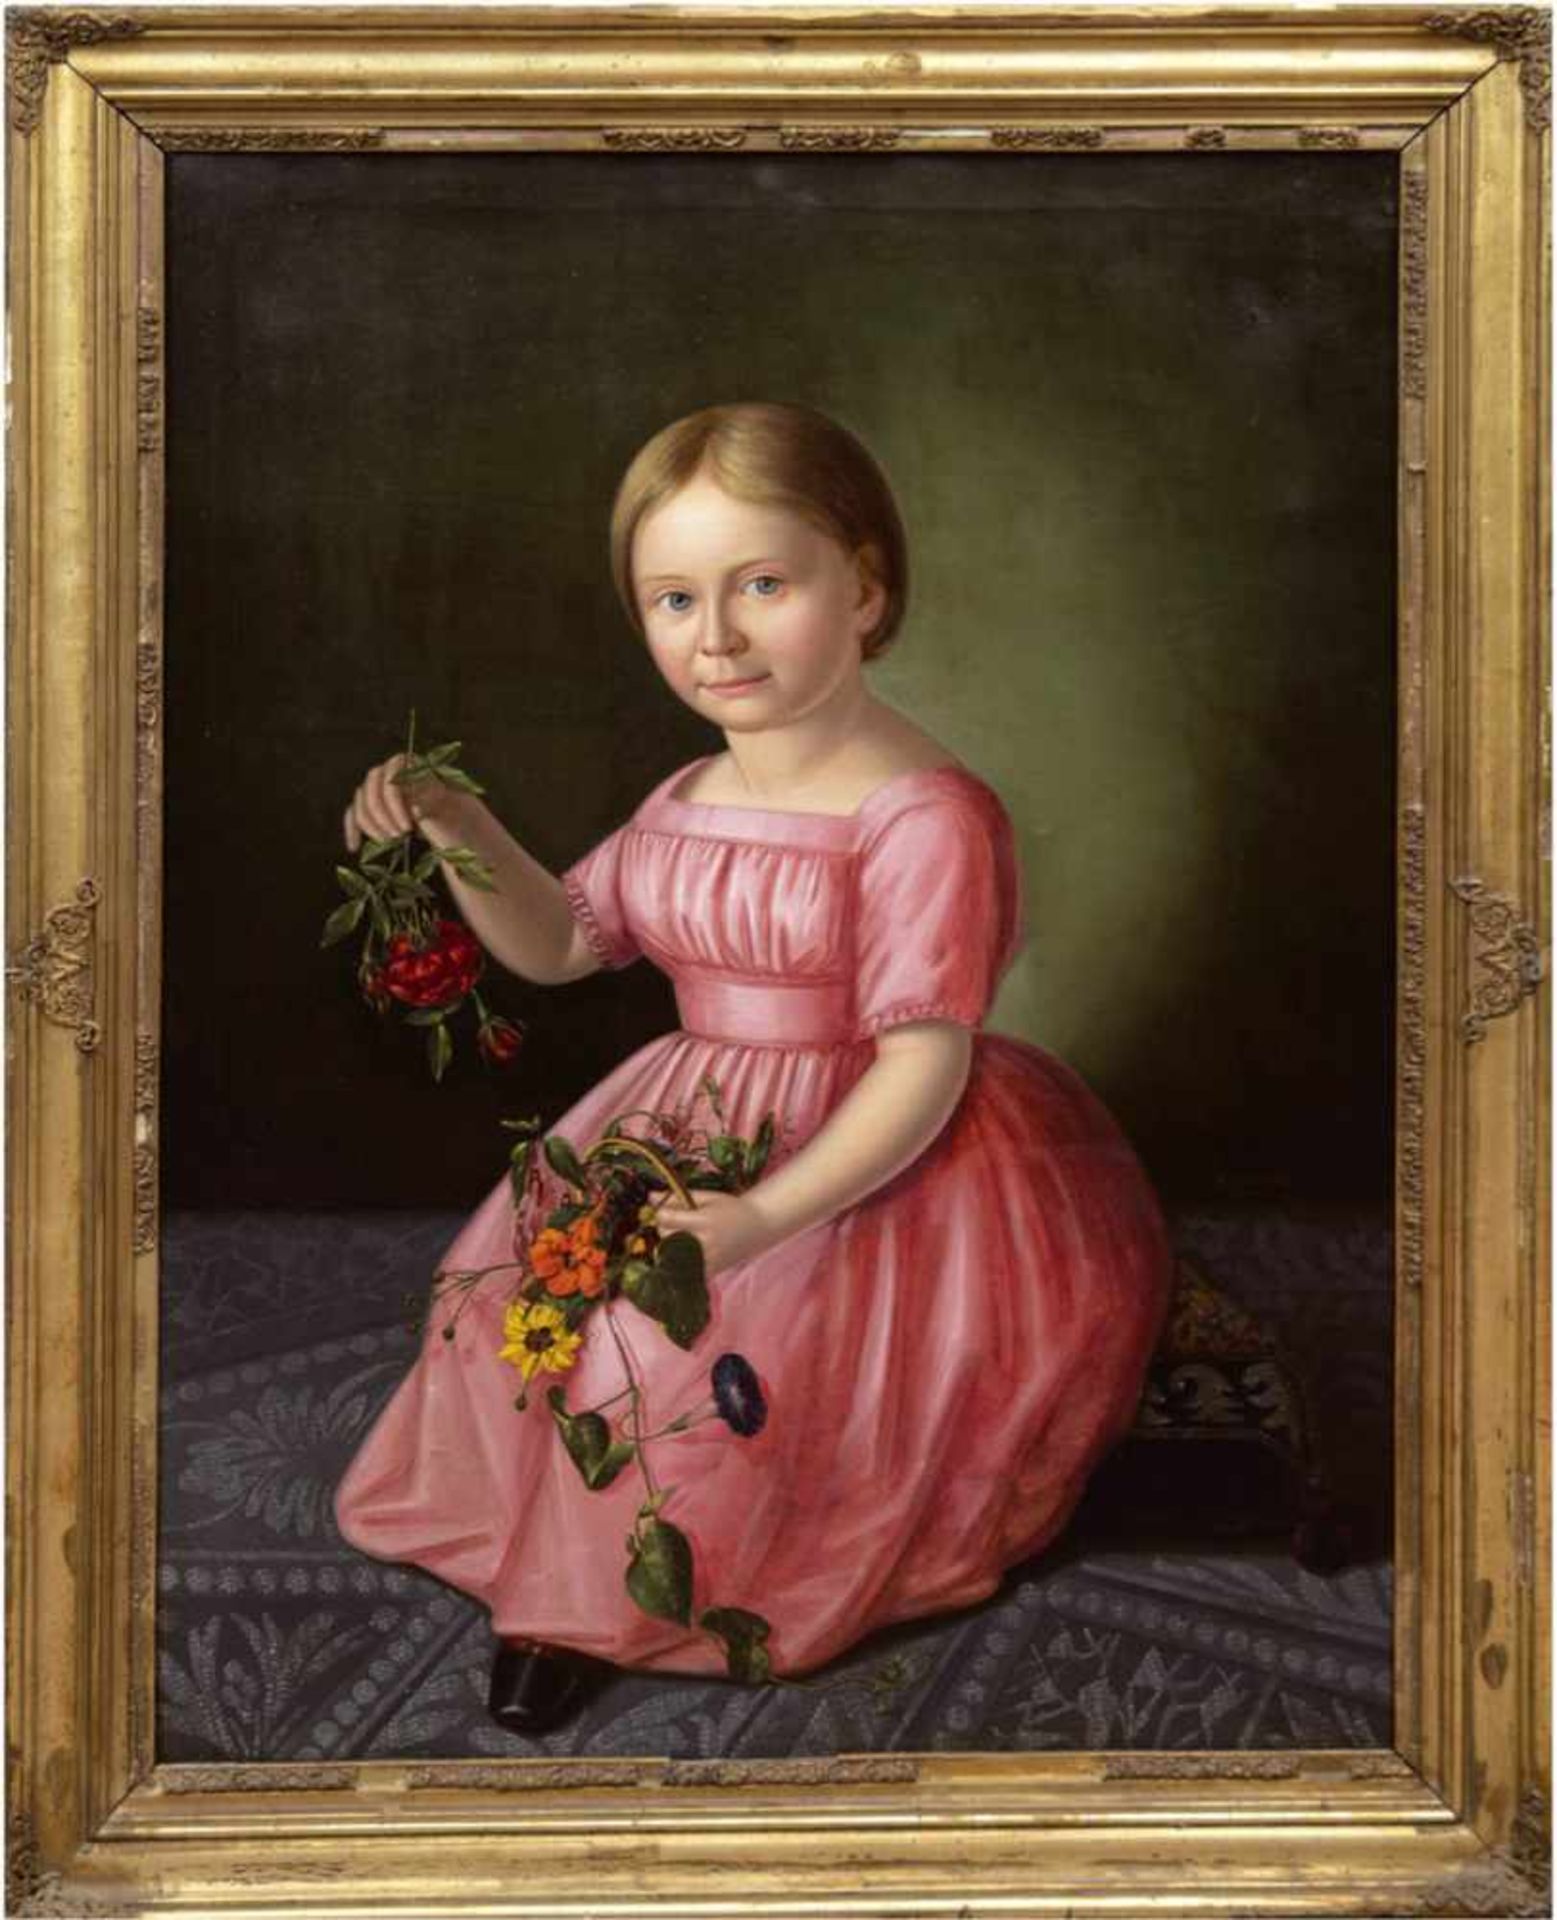 Humke,H. (Porträtmaler des Biedermeier, tätig um 1828-1851) "Junges Mädchen mitrosafarbenem Kleid,